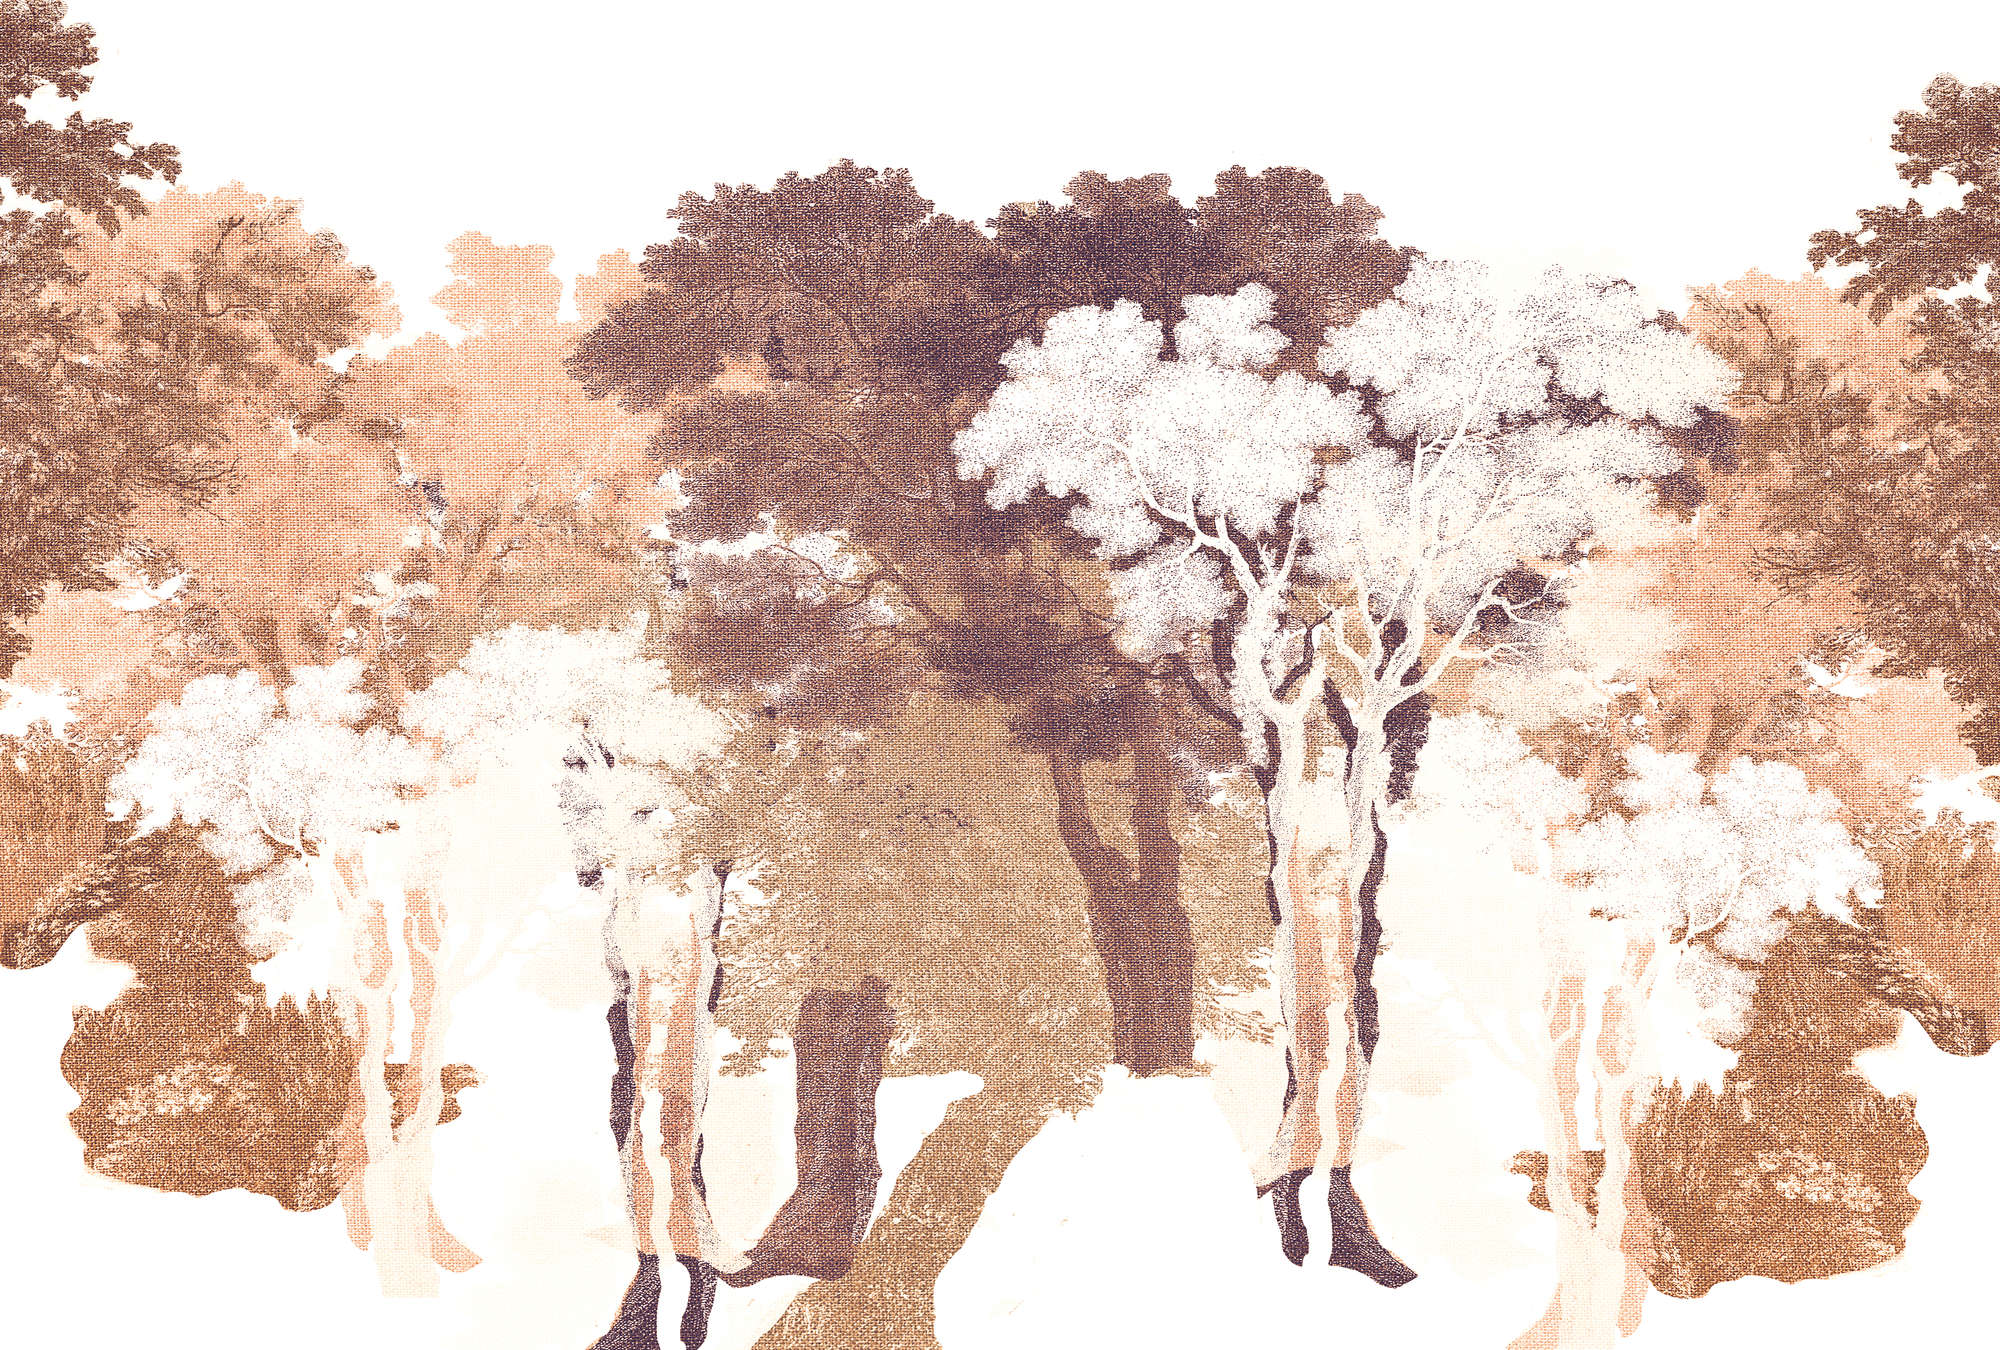             Papier peint Arbres, aspect textile & paysage forestier - orange, blanc, gris
        